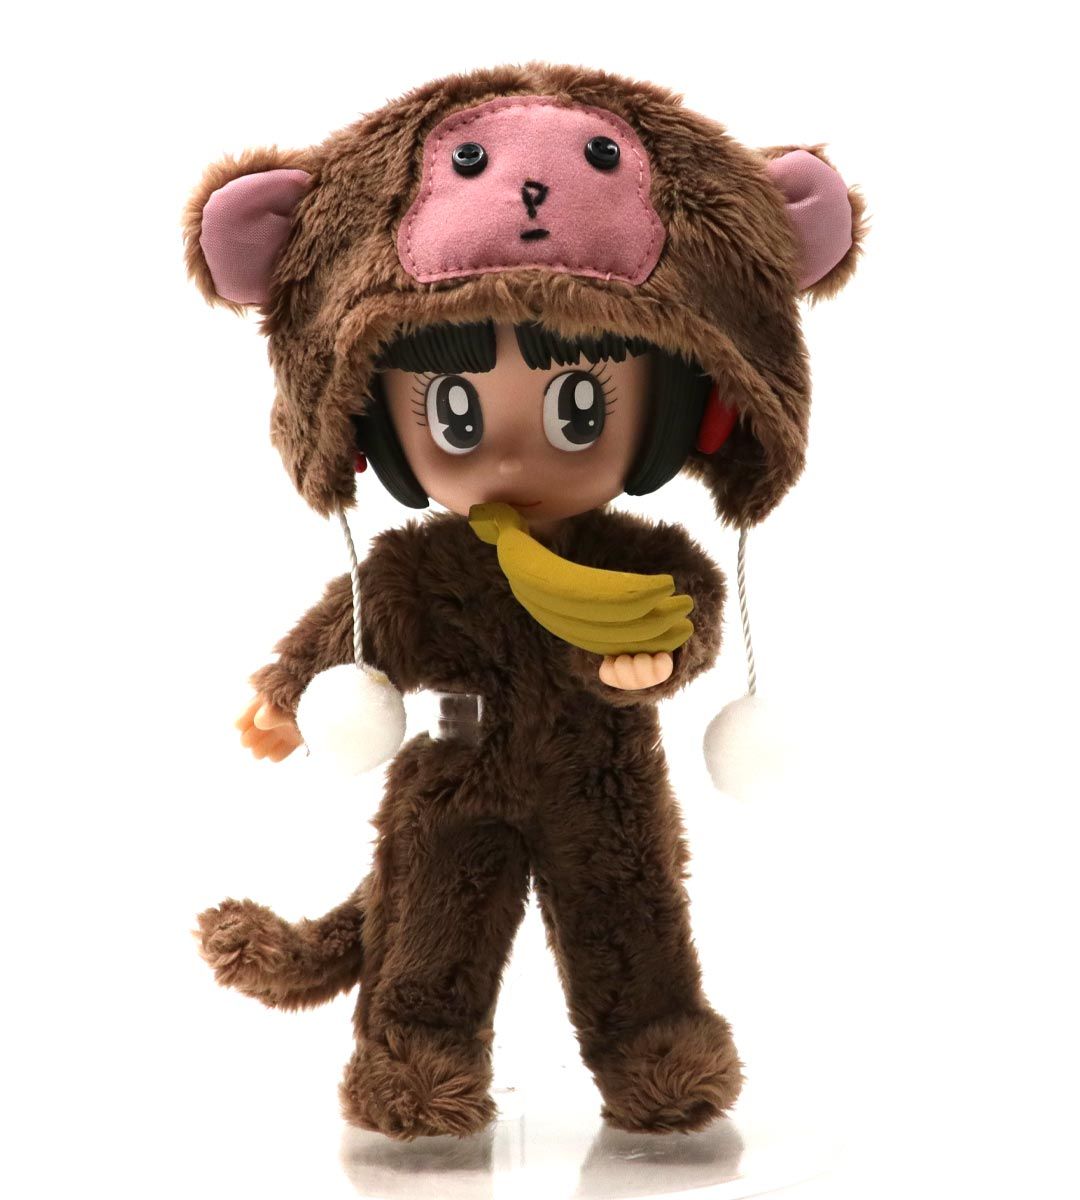 Pinoko Collection 09 - Monkey